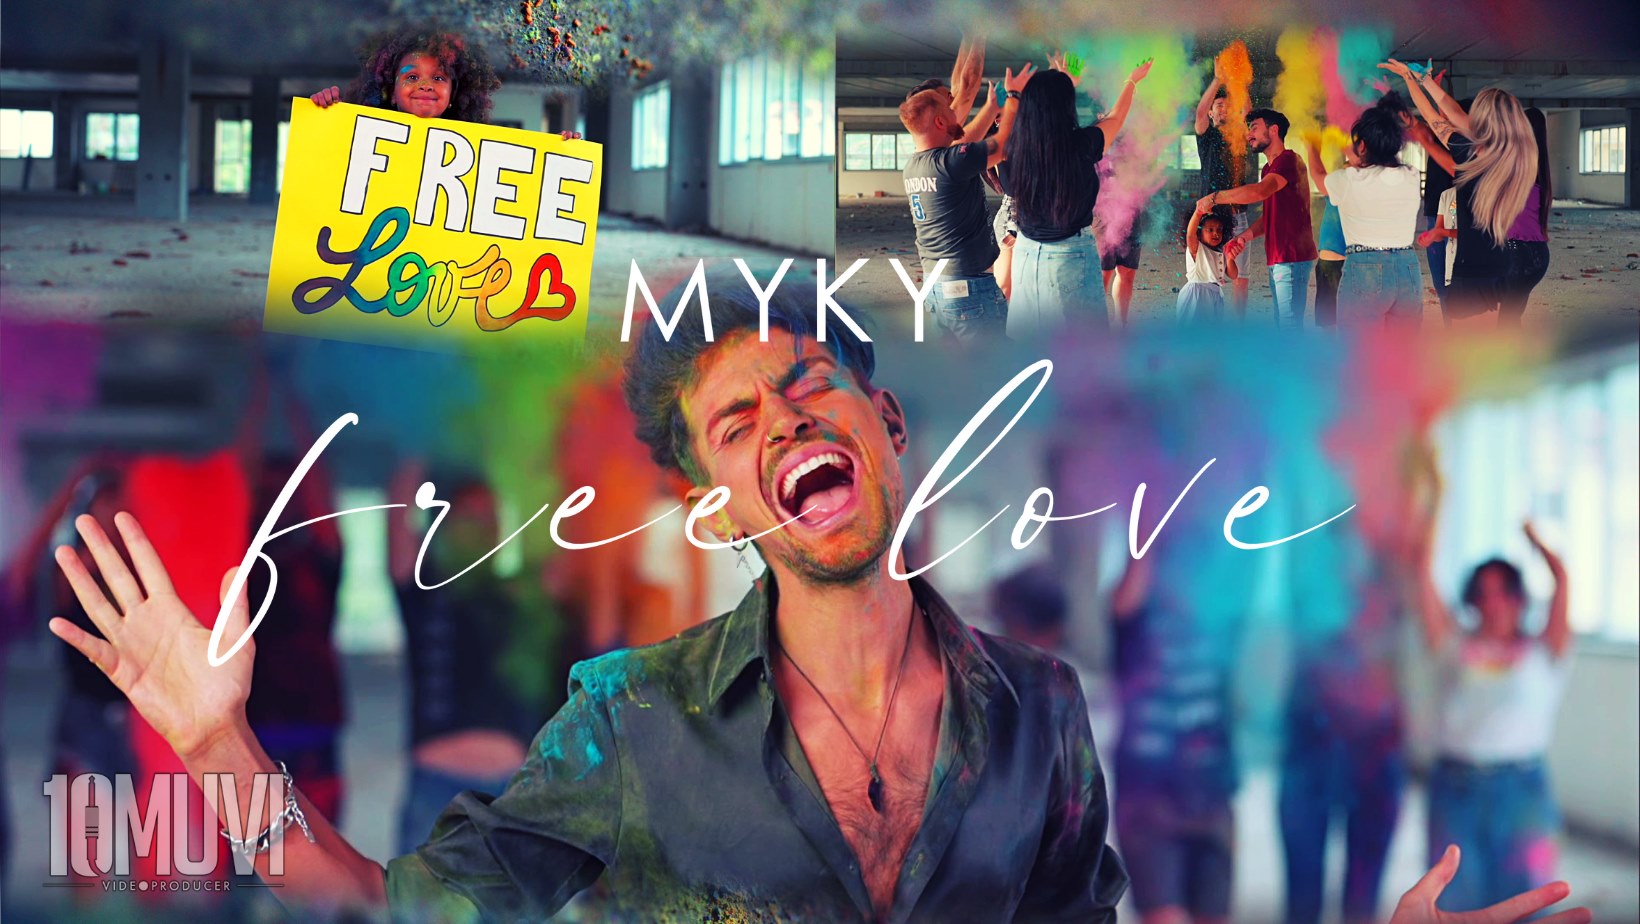 Free Love:  l’inno di Myky alla libertà di essere e amare è un caleidoscopico gioco di immagini e intenti.